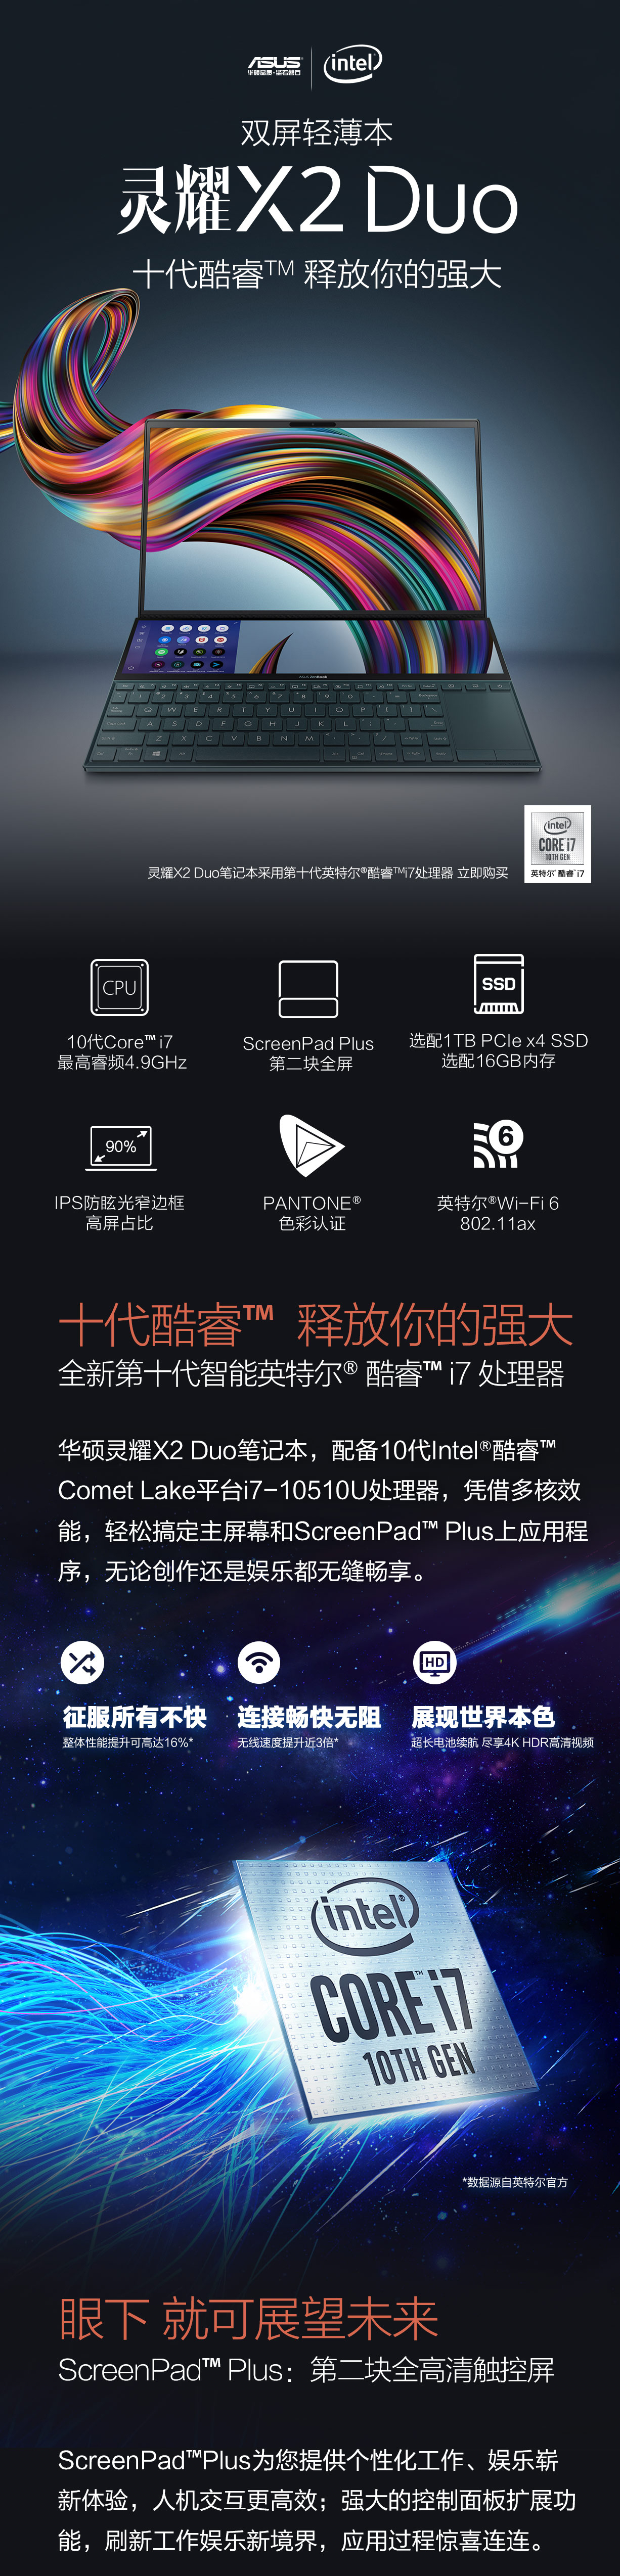 华硕灵耀X2 Duo双屏笔记本免费试用,评测